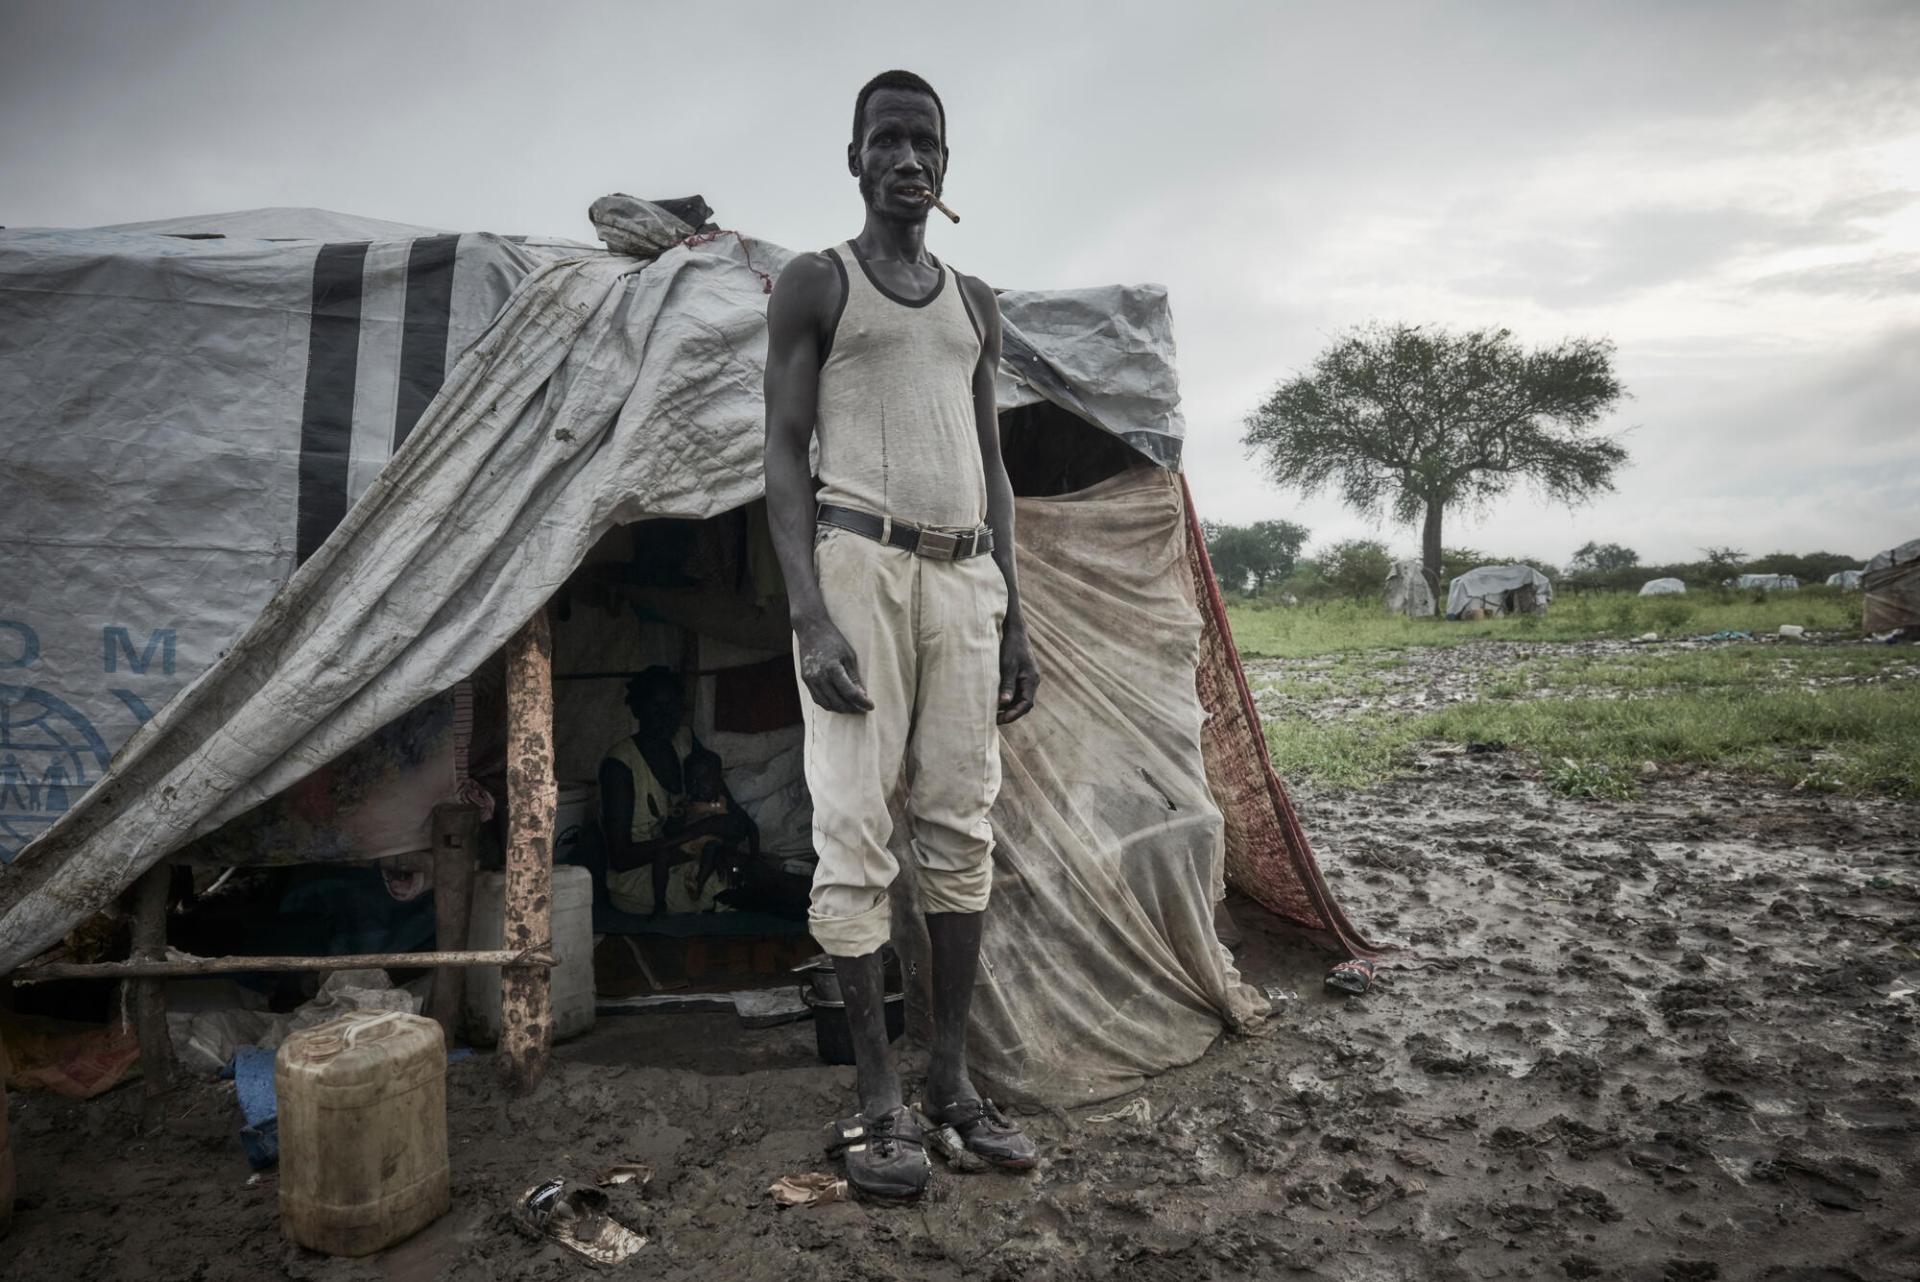 Portrait de Deng Ajok, déplacé sud-soudanais à Abyei. L’homme de 38 ans vit sous une tente dans des conditions précaires avec sa femme, Aguesndoit Malek, et leurs trois enfants. Soudan du Sud, août 2022